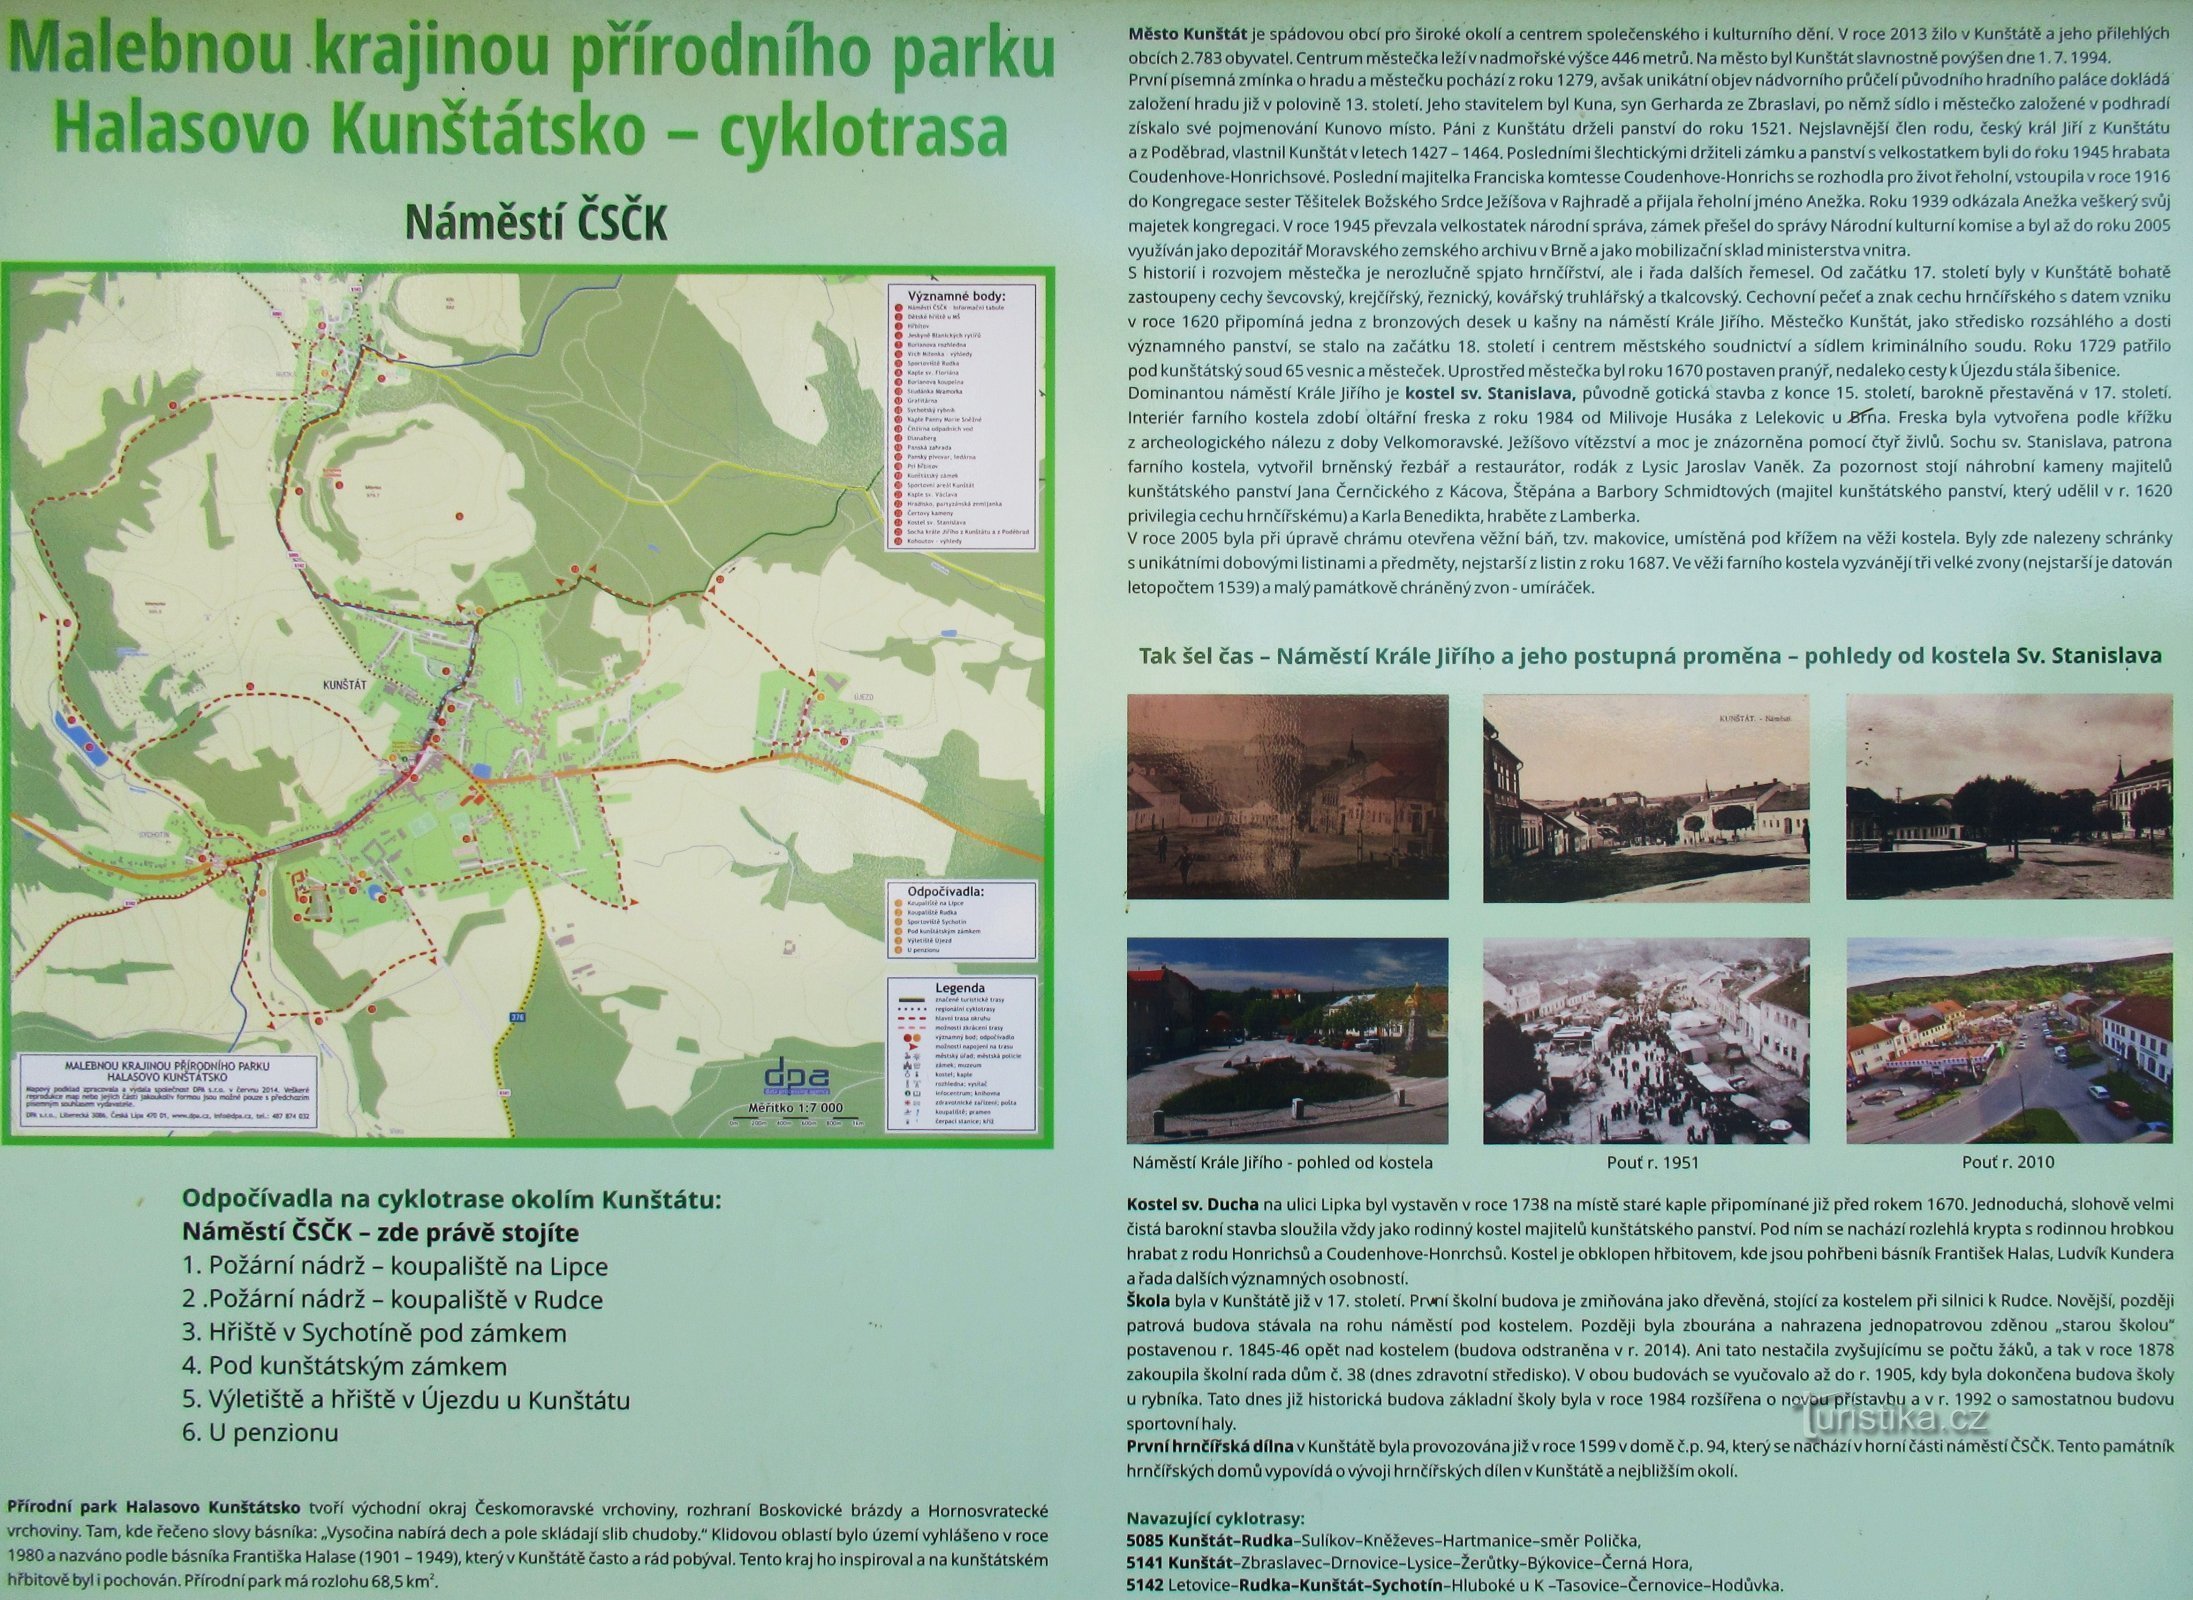 Через Галасово Кунштатський природний парк до місцевої частини – Рудки